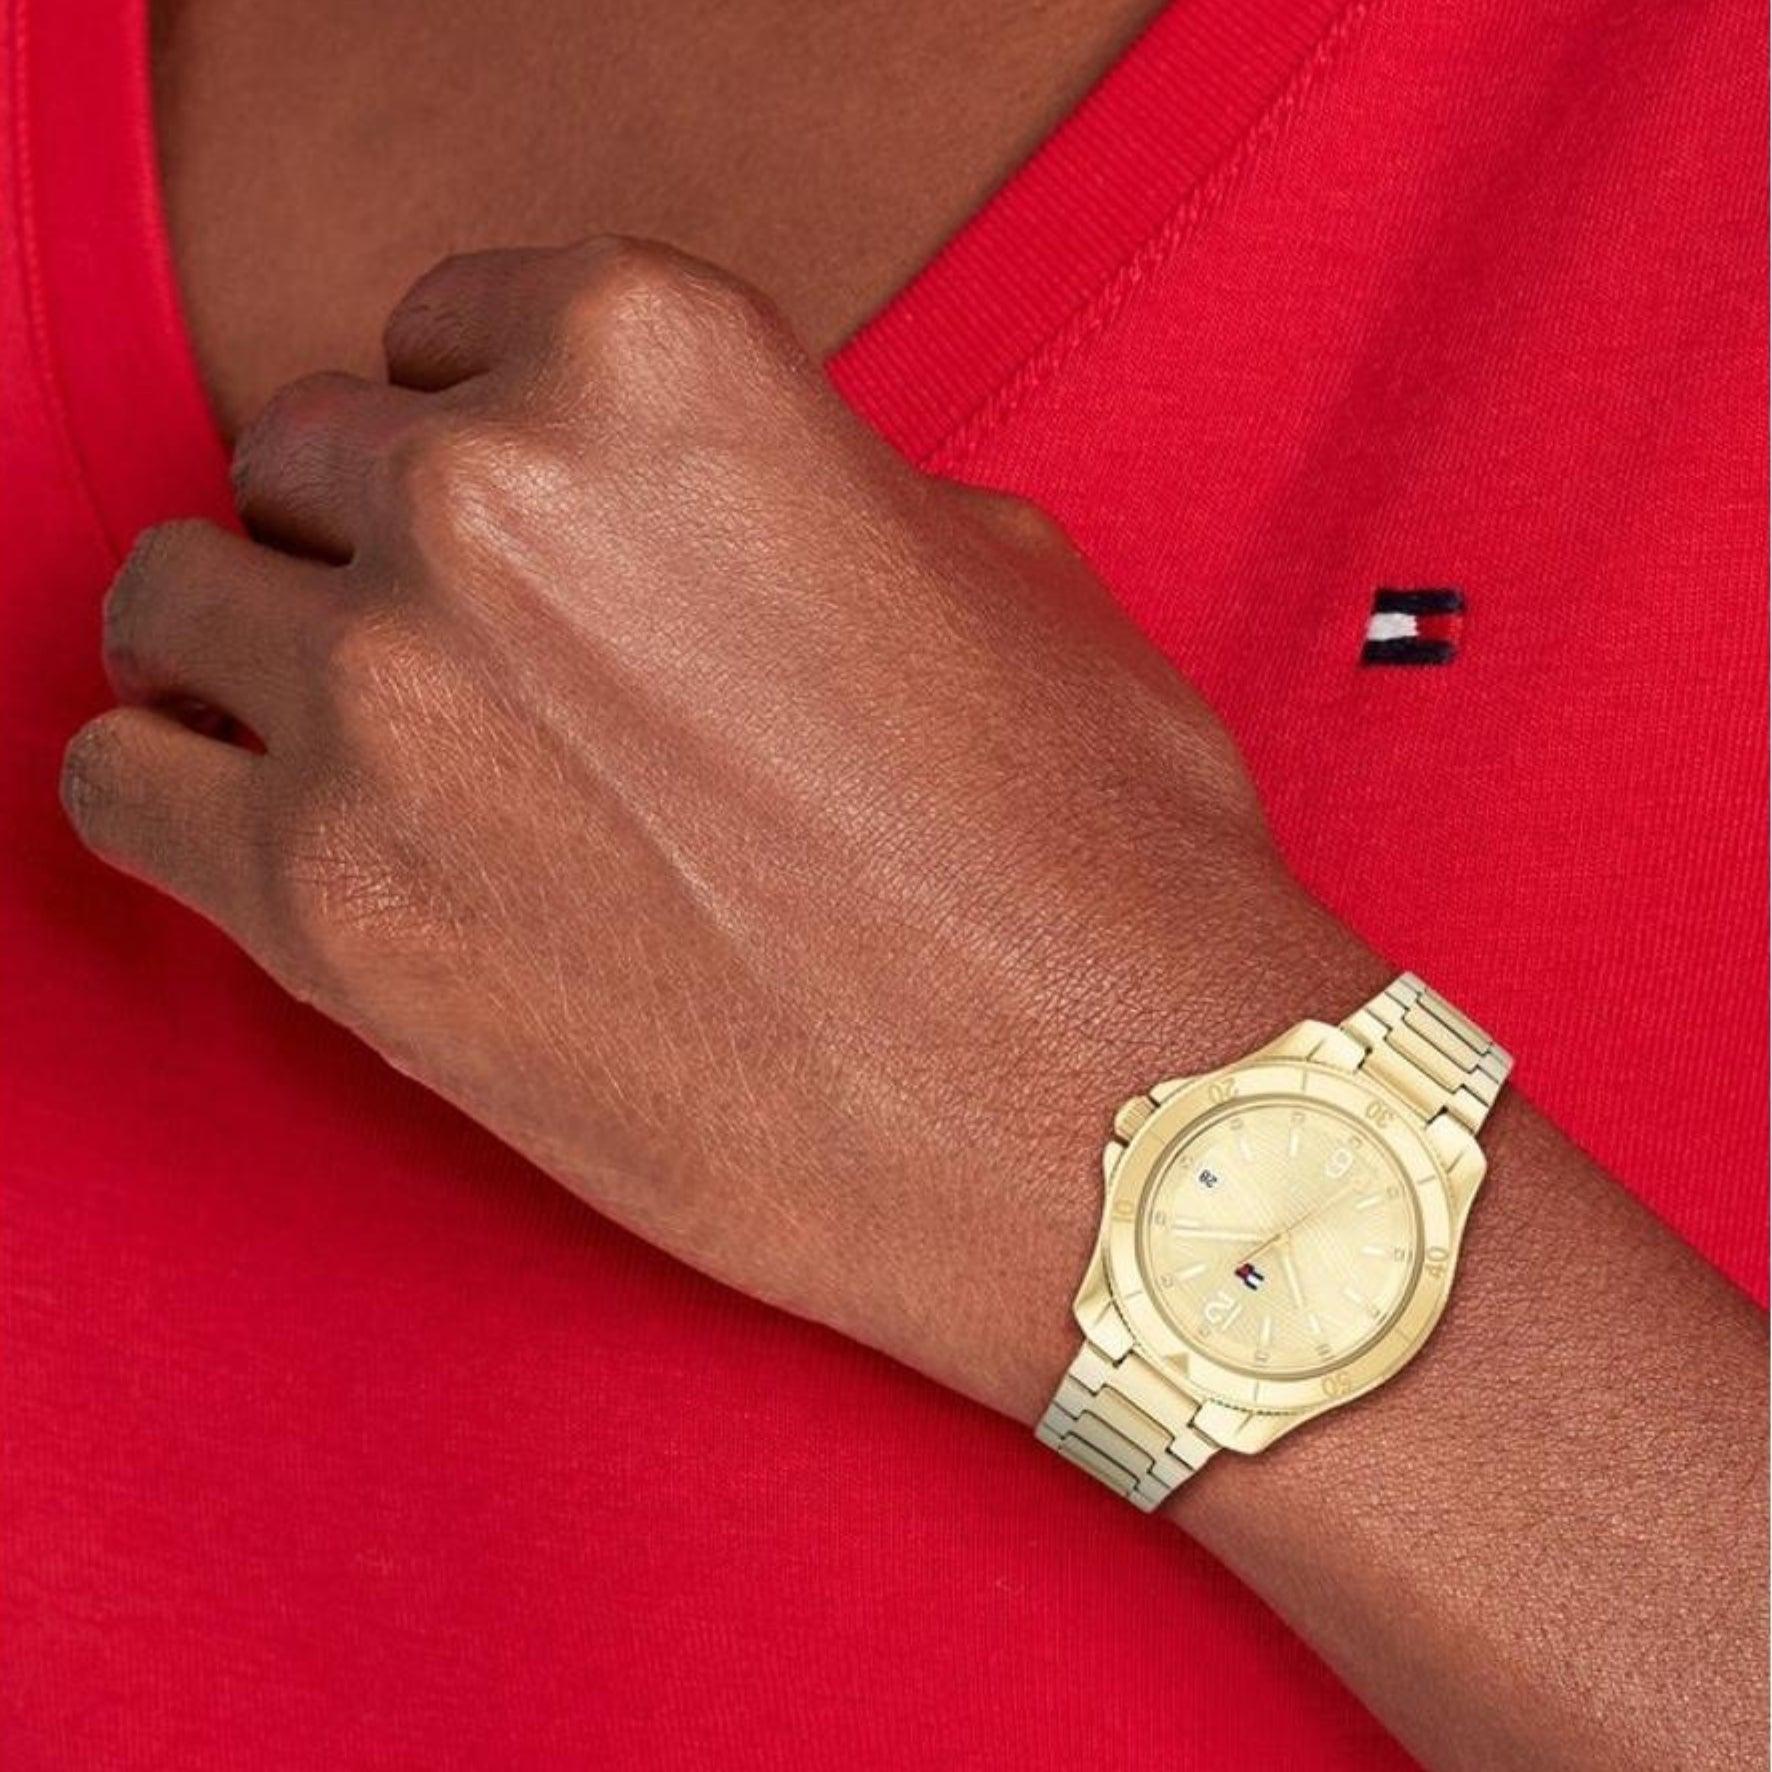 Γυναικείο ρολόι Tommy Hilfiger Brooke 1782513, με μπρασελέ σε χρυσό χρώμα από ανοξείδωτο ατσάλι και χρυσό καντράν με λειτουργία ημερομηνίας φορεμένο σε γυναικείο χέρι.